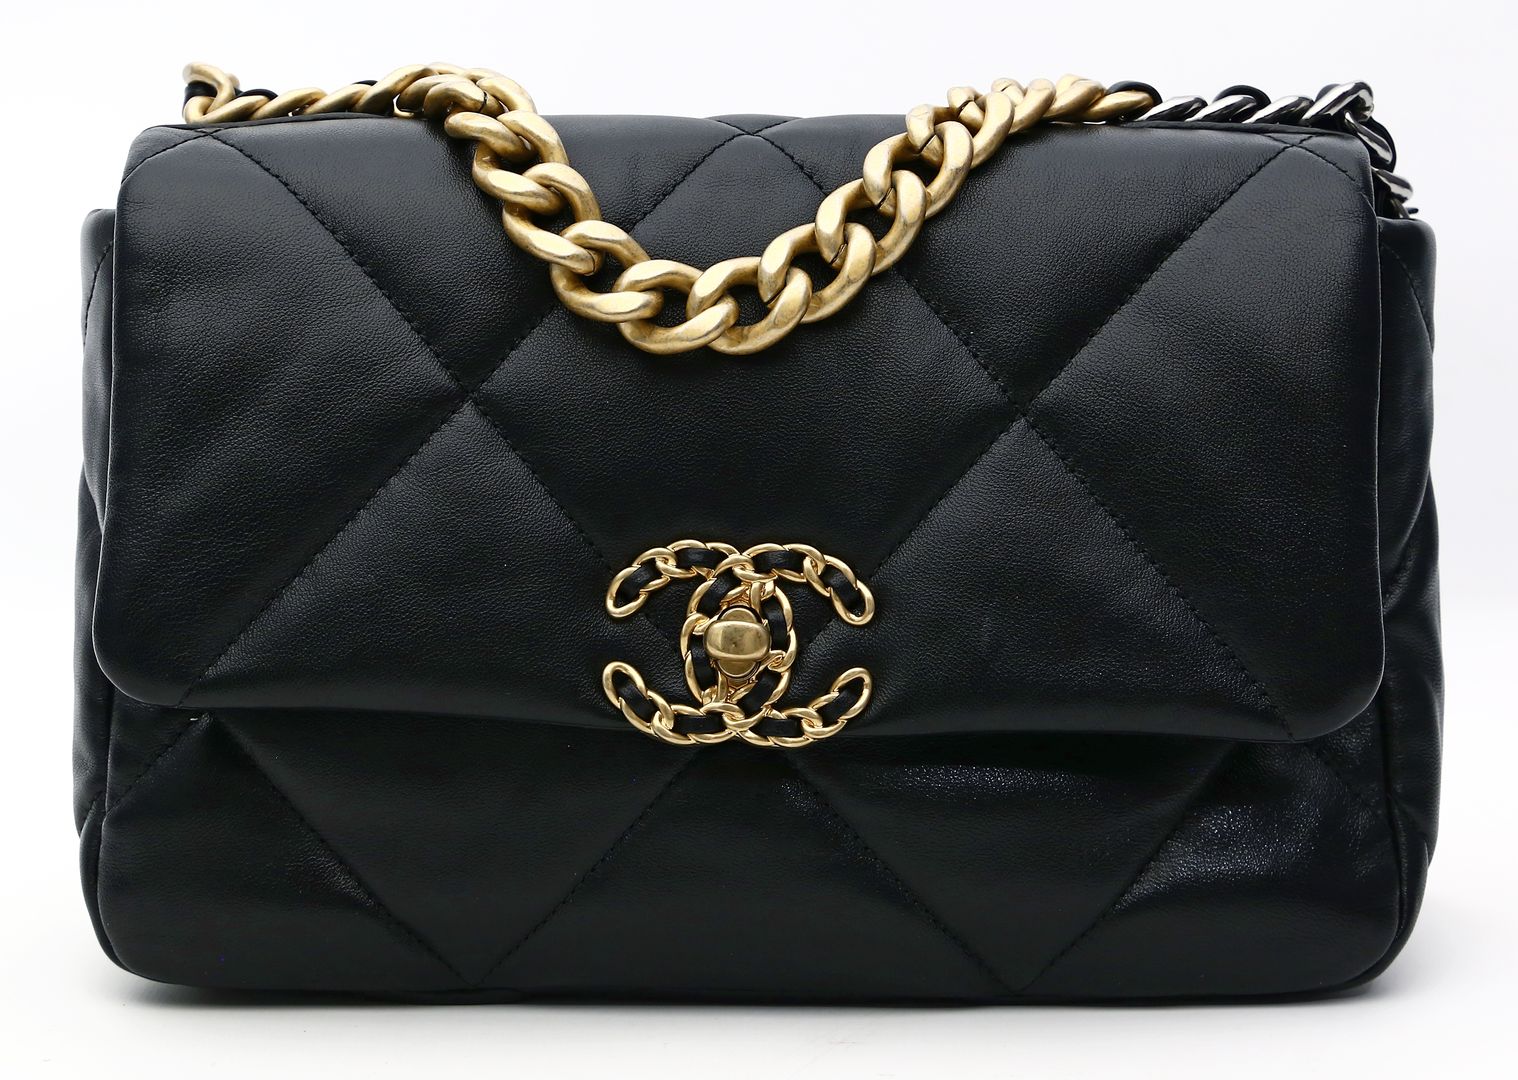 Handtasche "Chanel 19", Chanel.